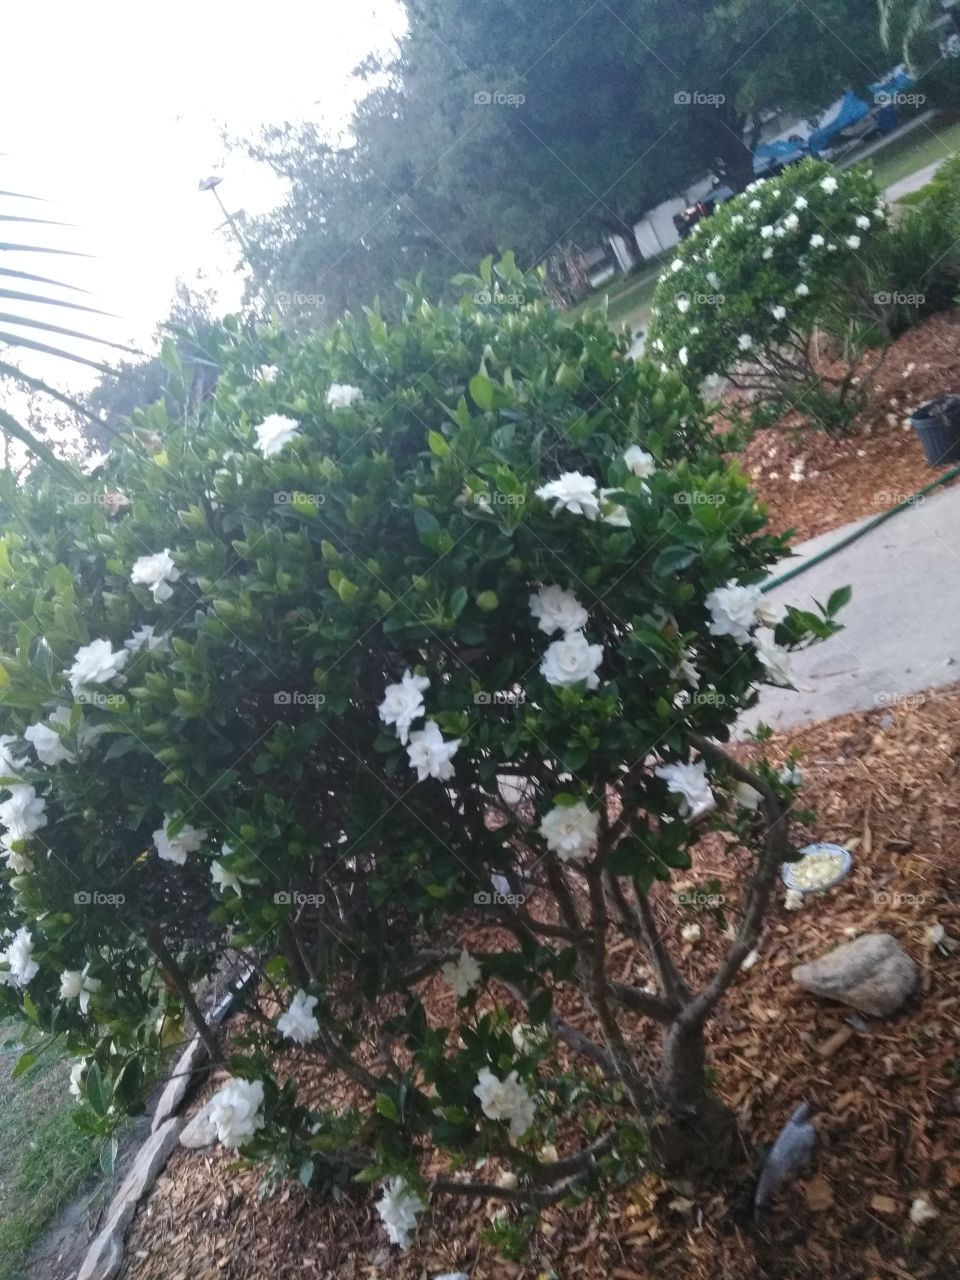 Gardenias